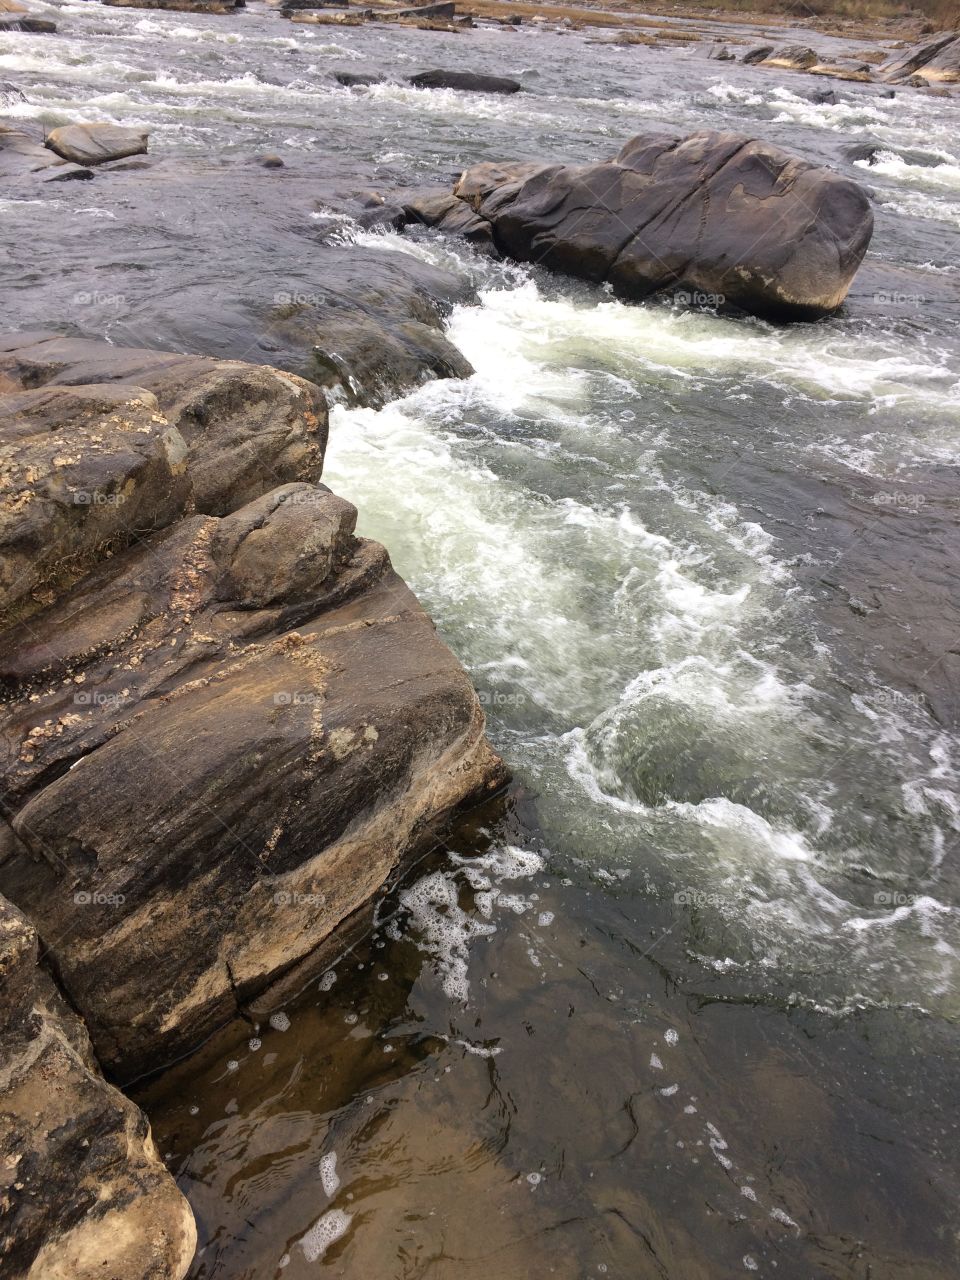 River rushing through rocks